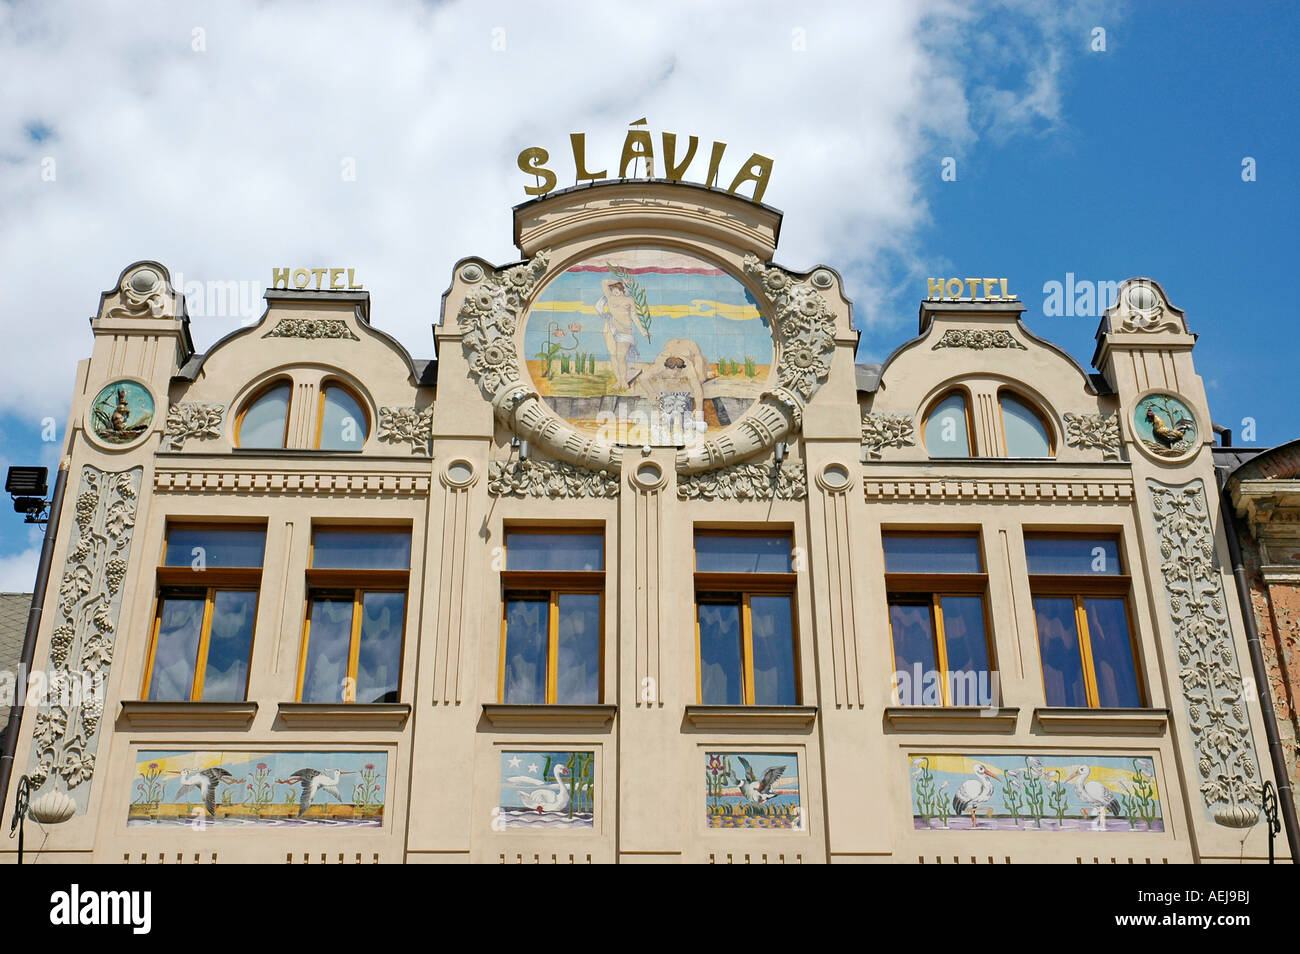 Hotel Slavia, Kosice, Slovakia Stock Photo